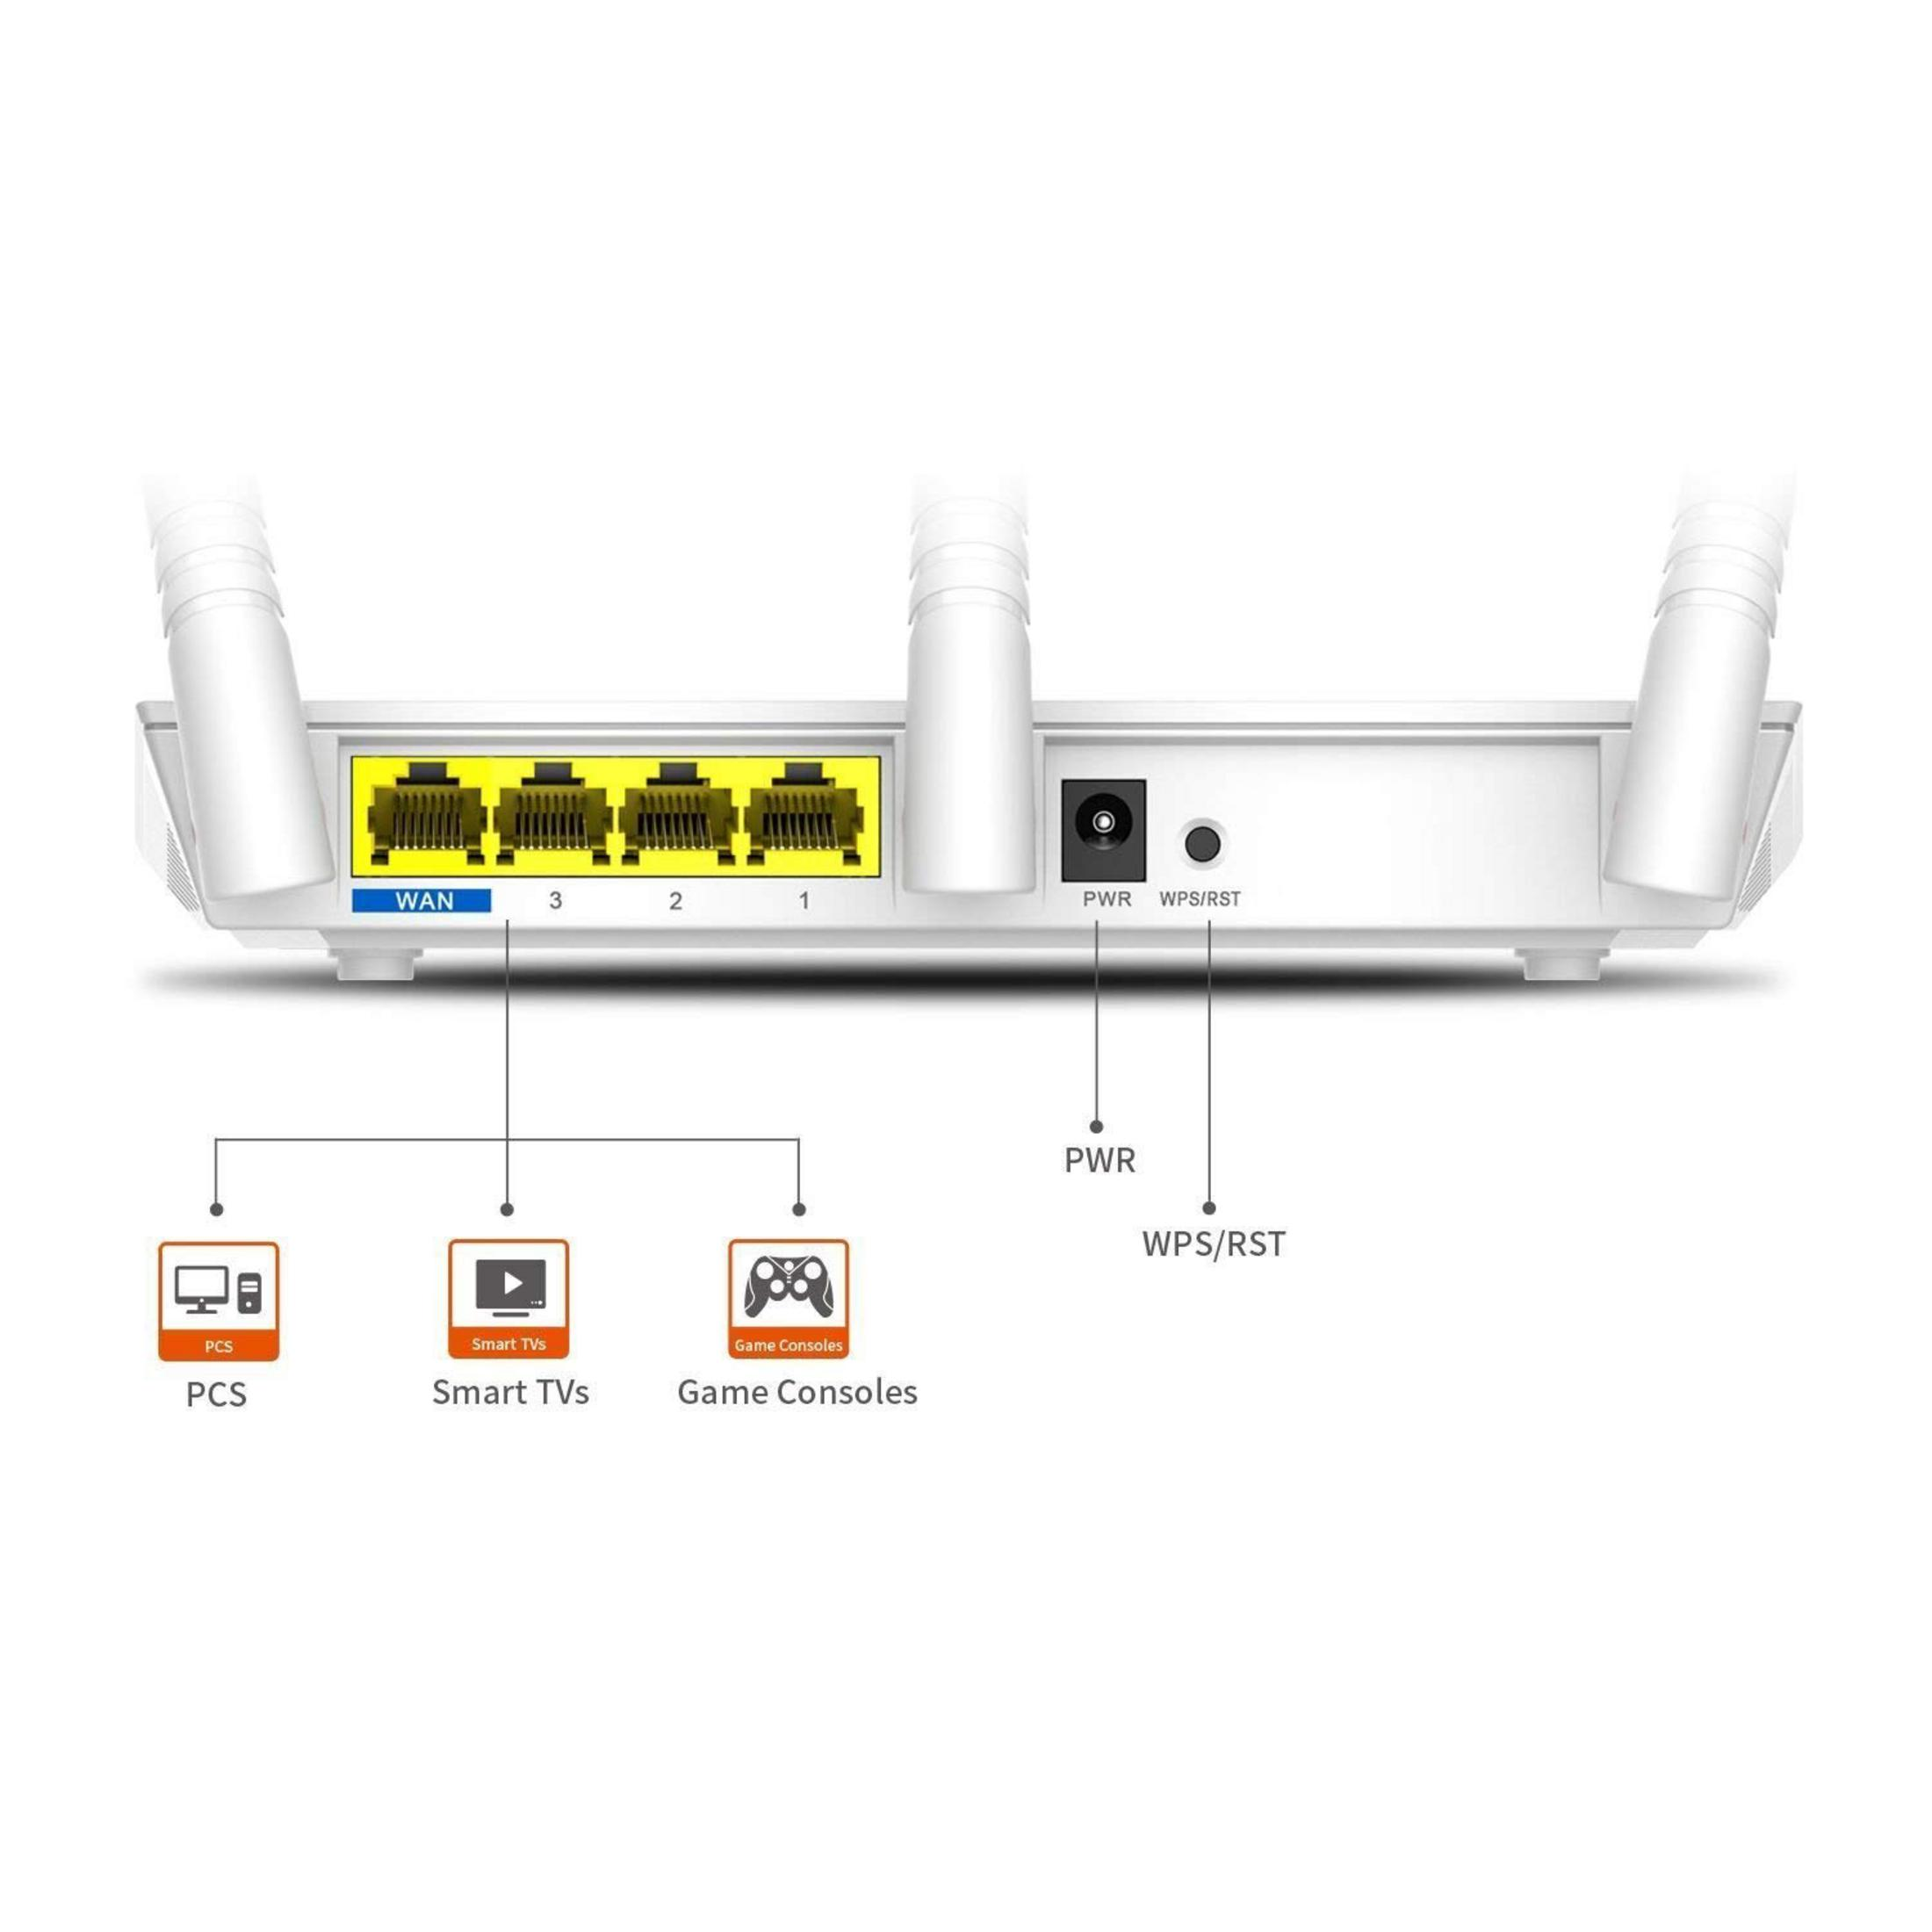 300MBIT/S Router F3 TENDA ROUTER WLAN Mbit/s 300